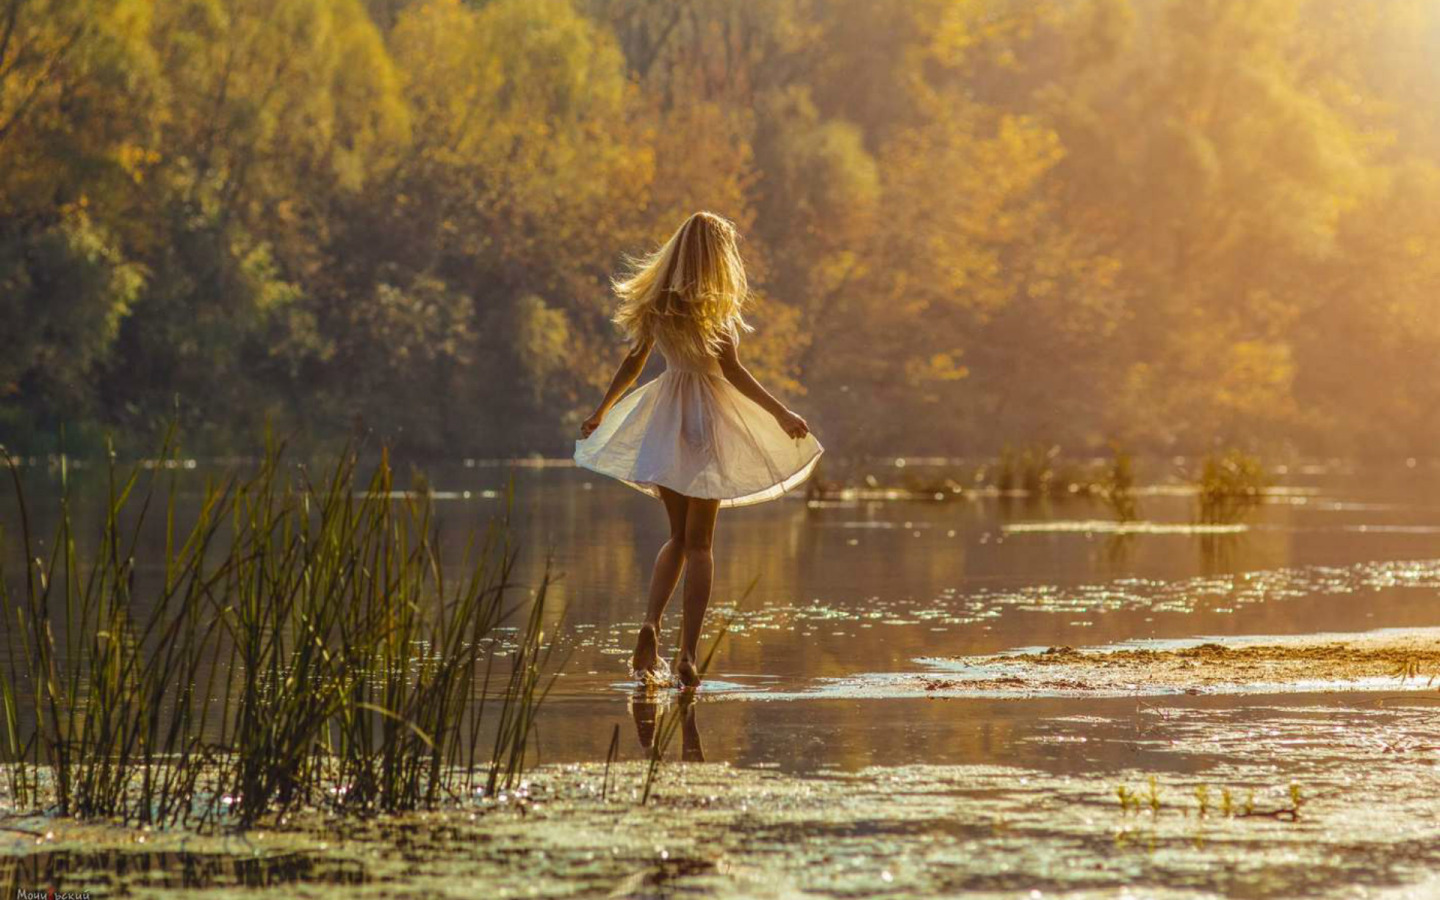 Превосходная милашка снимает белое платье на берегу реки